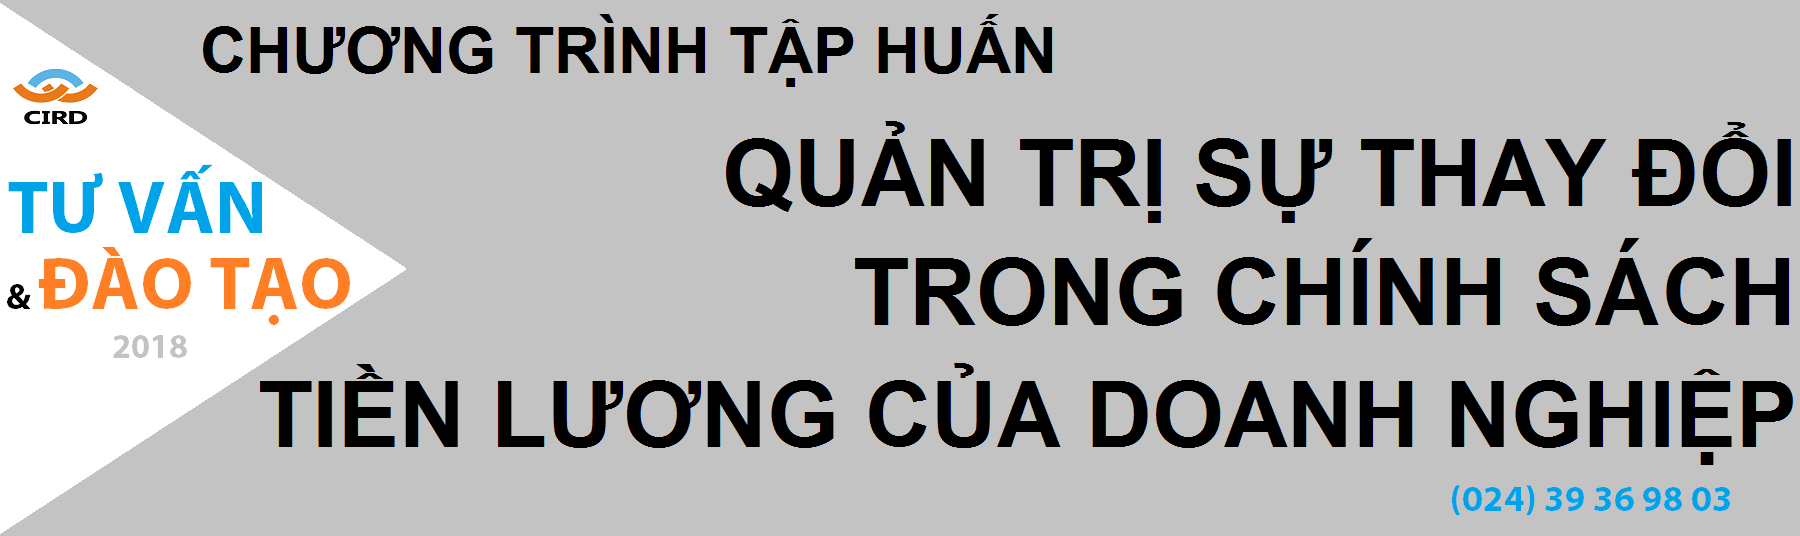 CHUONG TRINH KHAO SAT NOI LAM VIEC